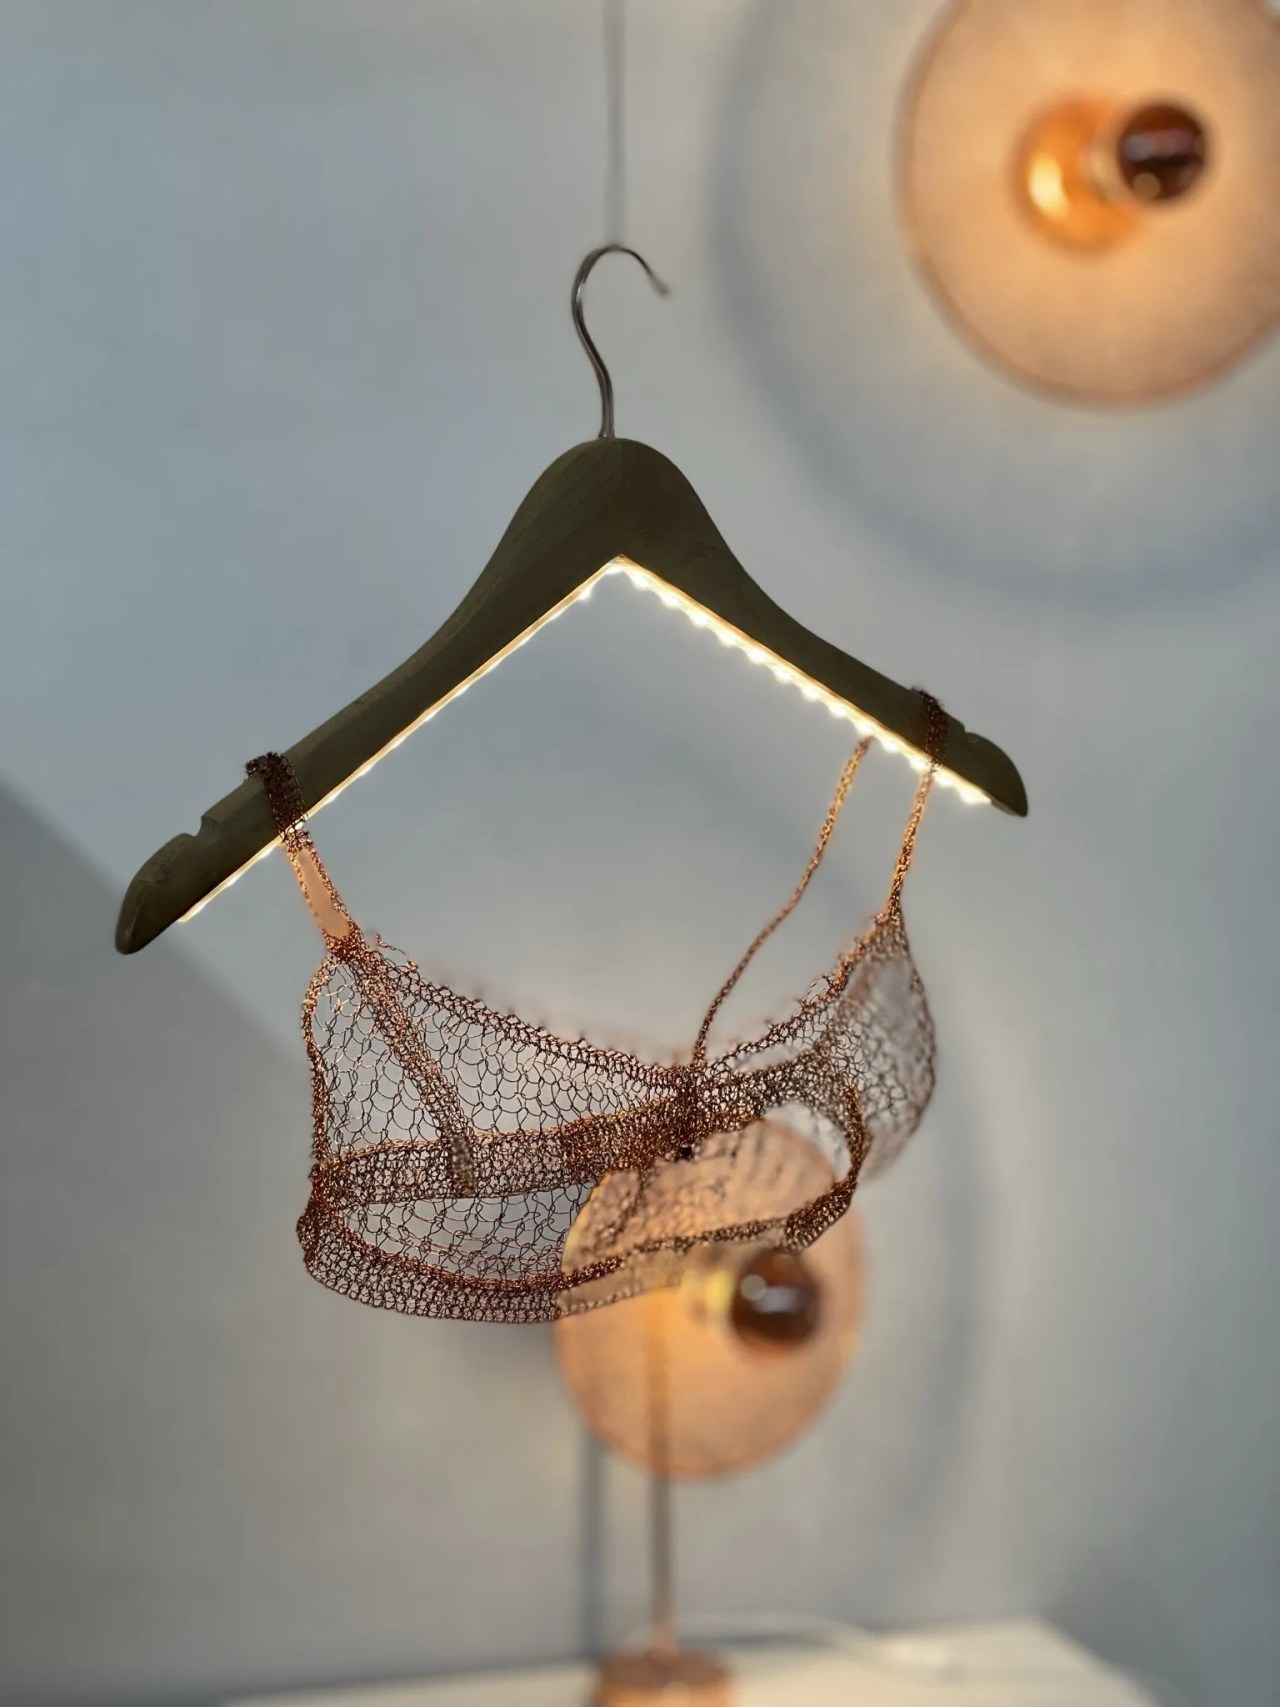 wired bra sculpture